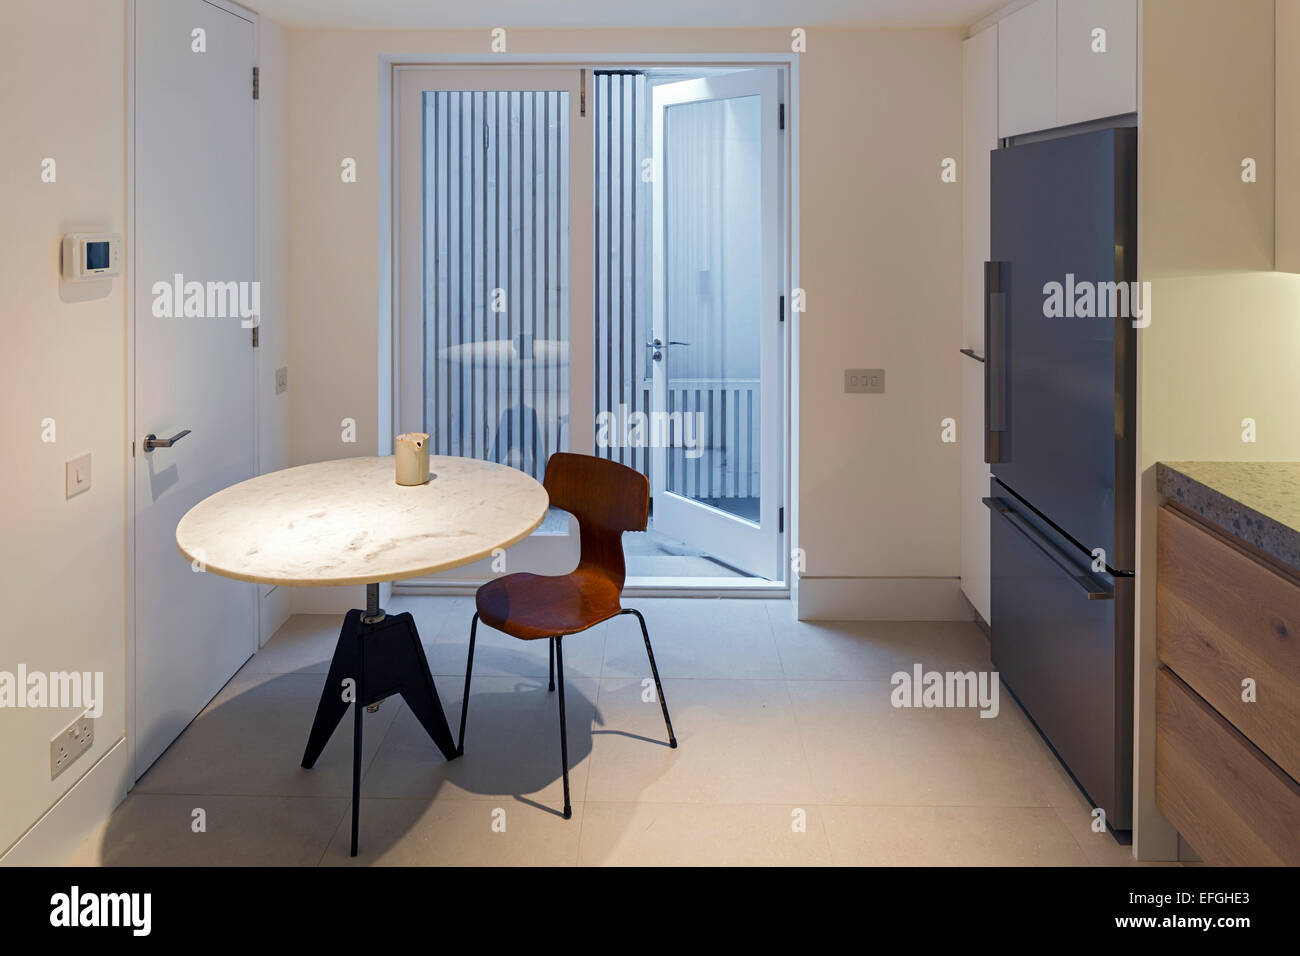 Casa privata, Londra, Regno Unito. Architetto: West architettura, 2015. La cucina al seminterrato anteriore cortile. Foto Stock